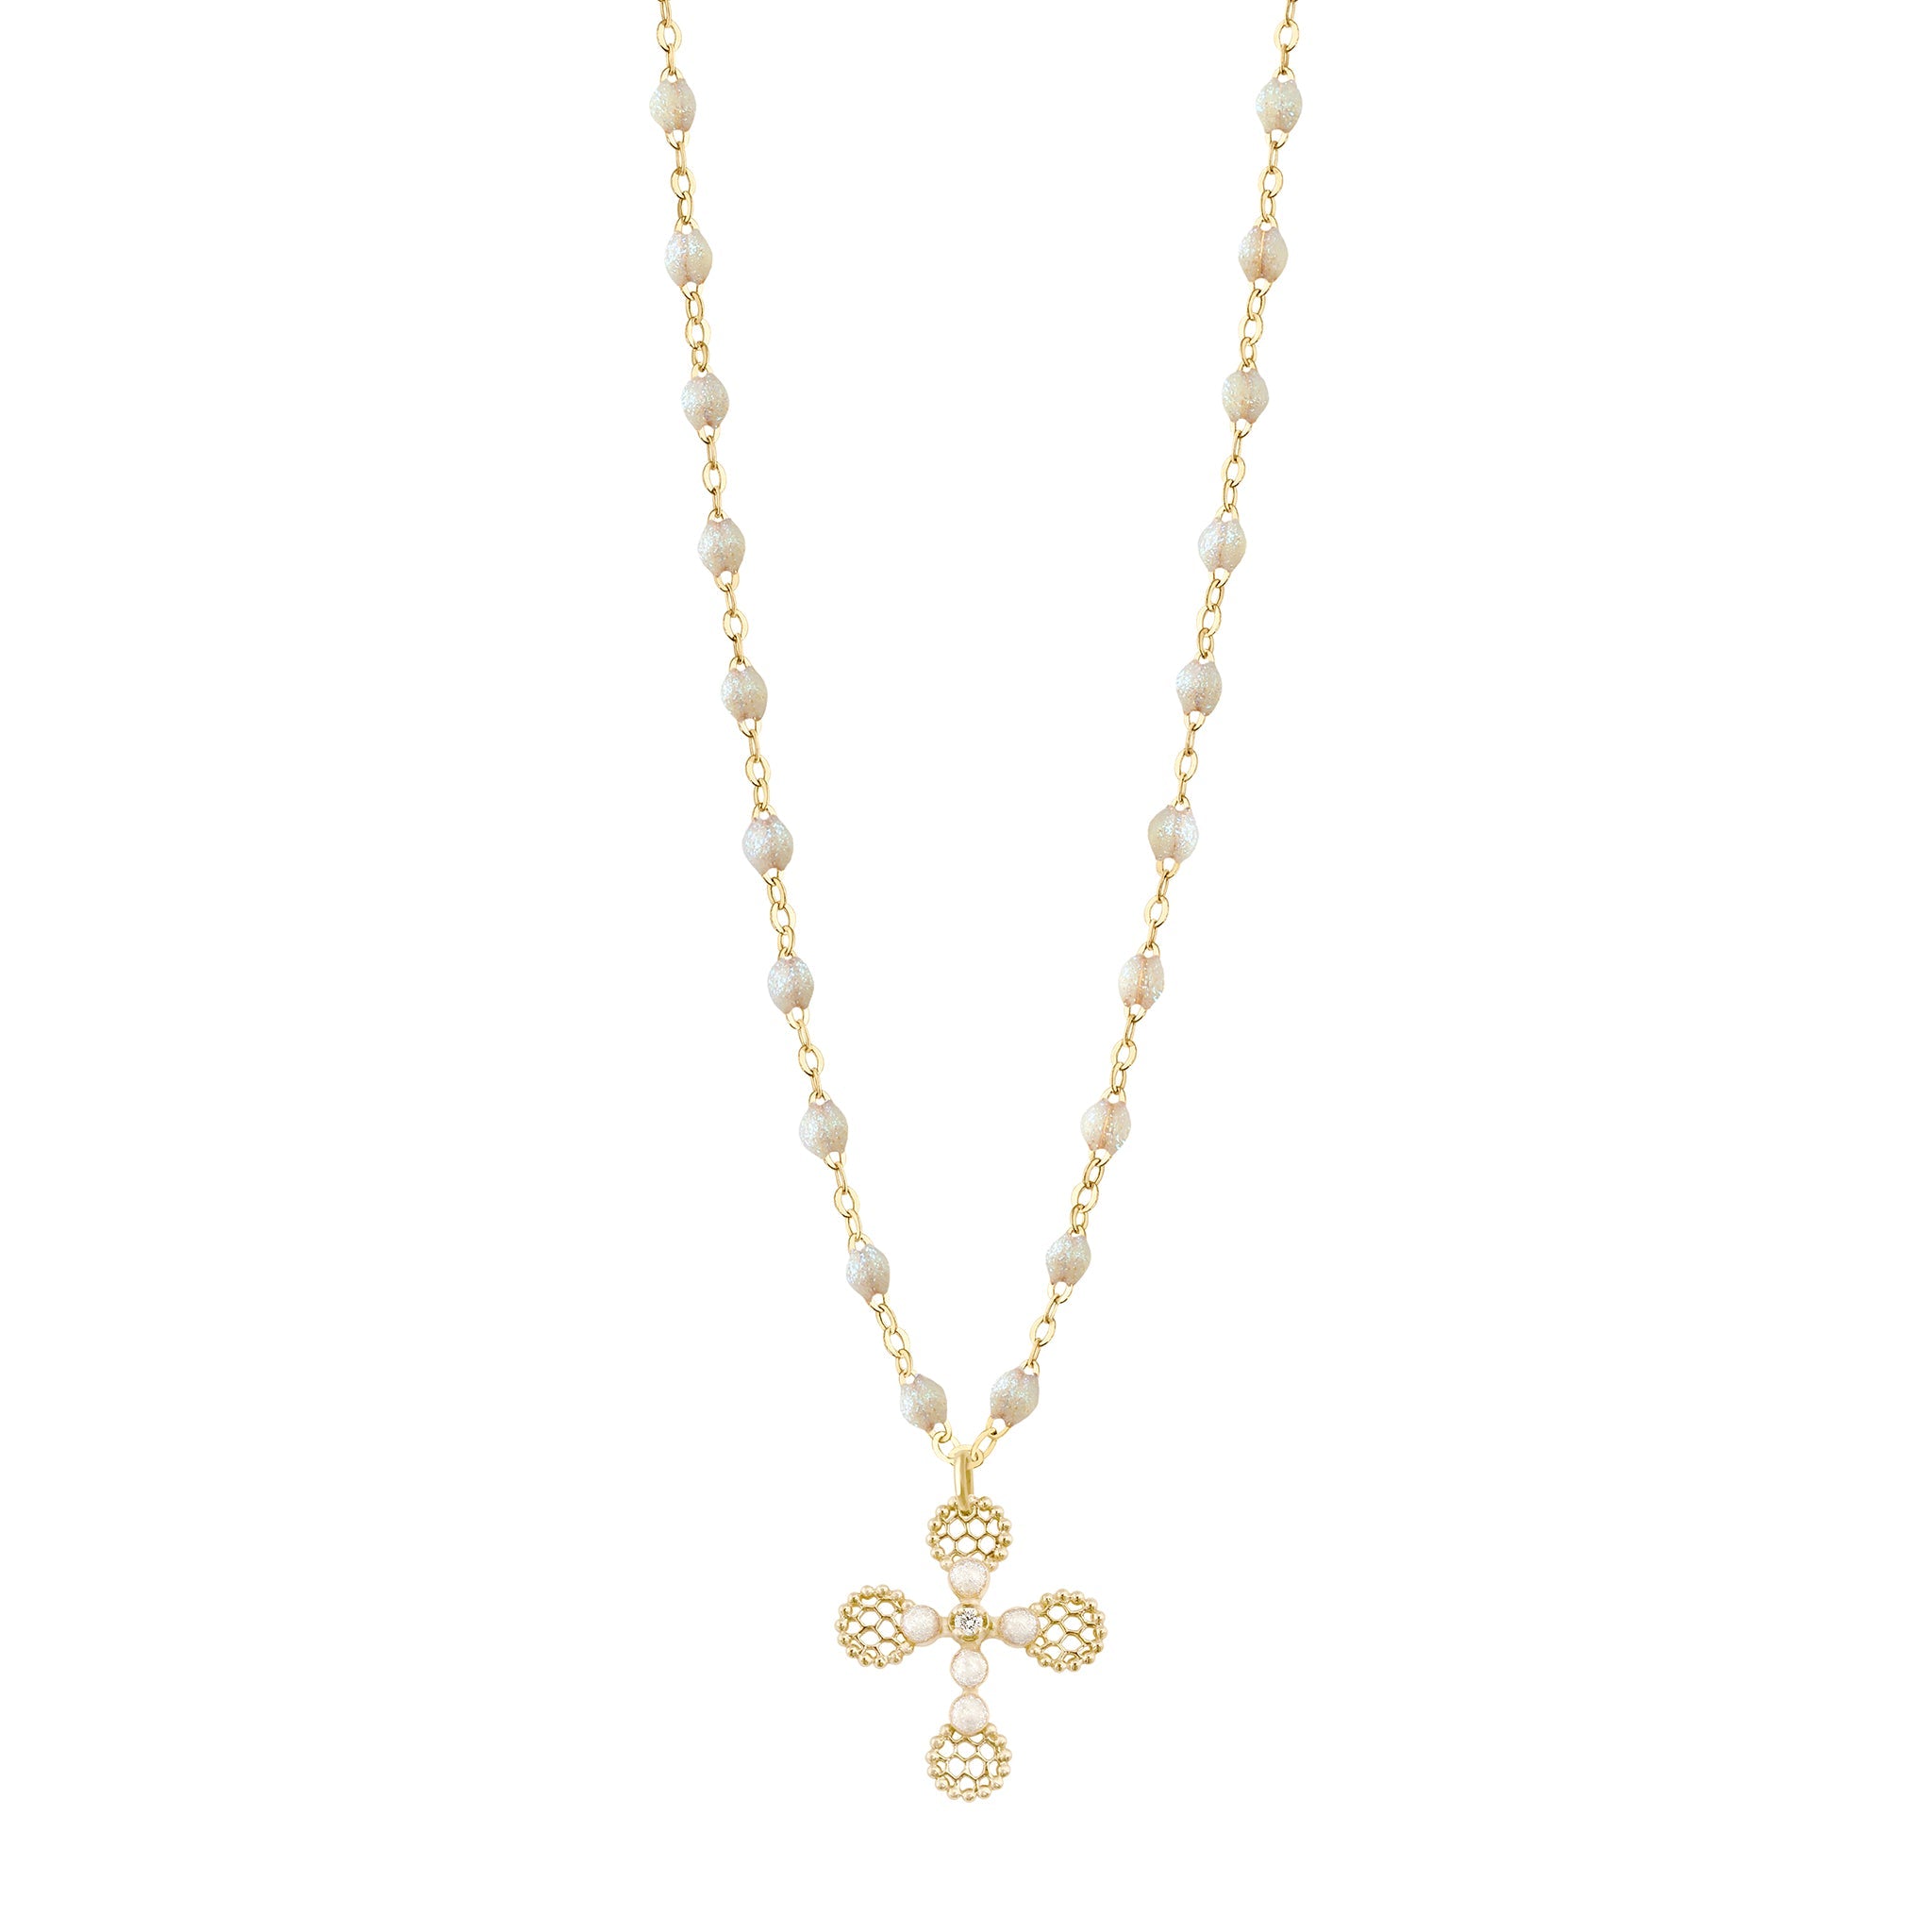 Gigi Clozeau - Lace Cross Diamond Necklace, Opal, Yellow Gold, 16.5"